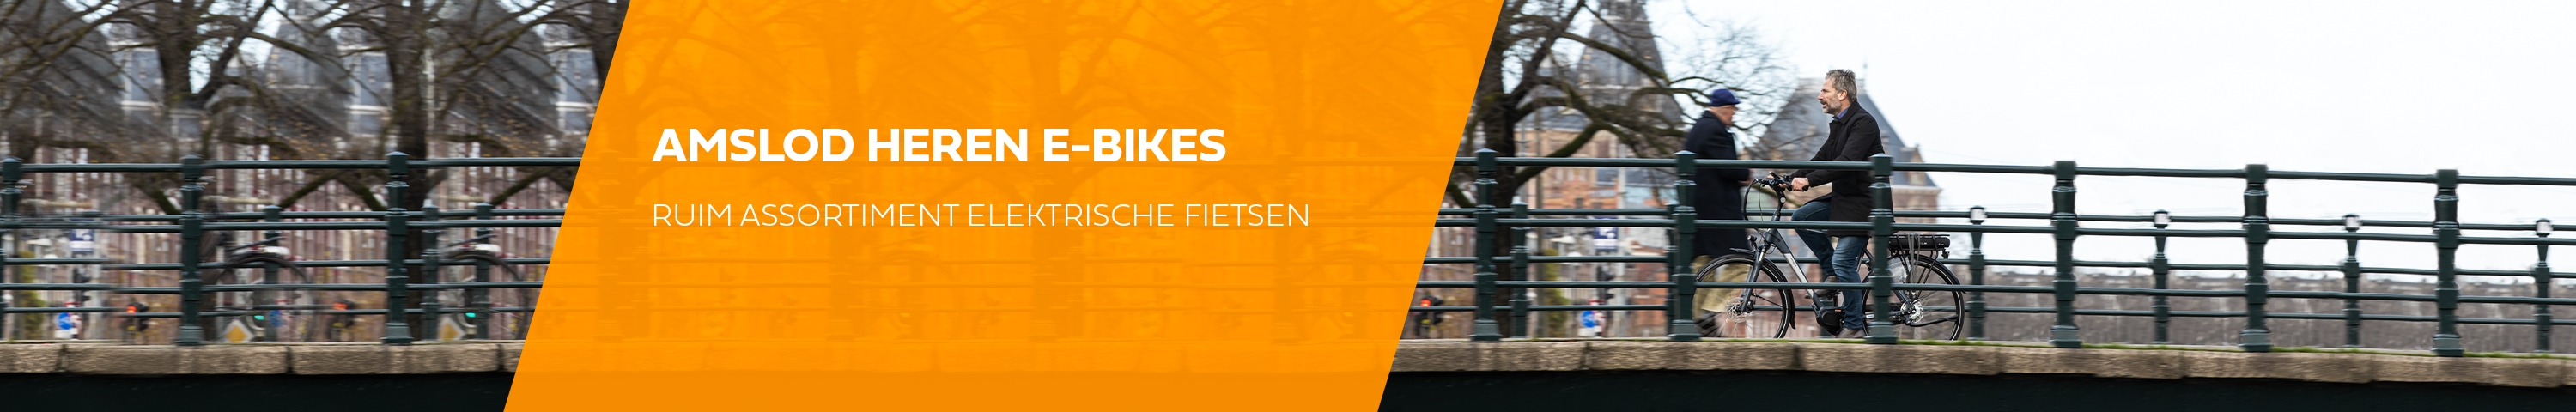 Elektrische fietsen - Desktop-20220309114026701